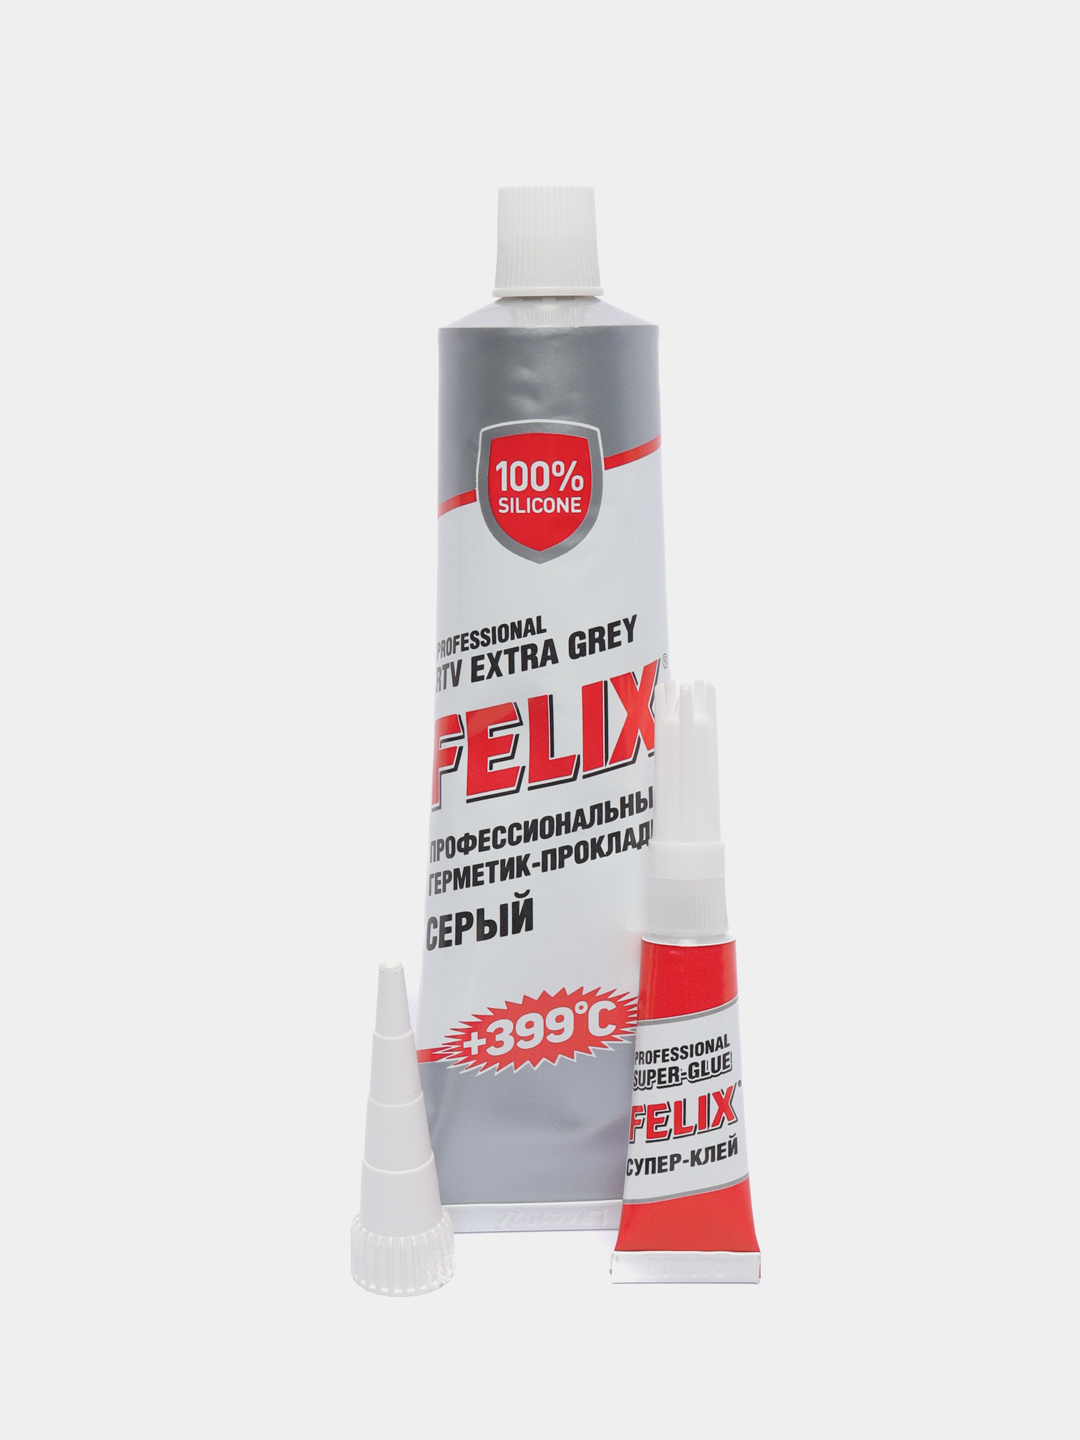 Герметик felix. Герметик-прокладка серый (100гр) Felix уп/12шт.